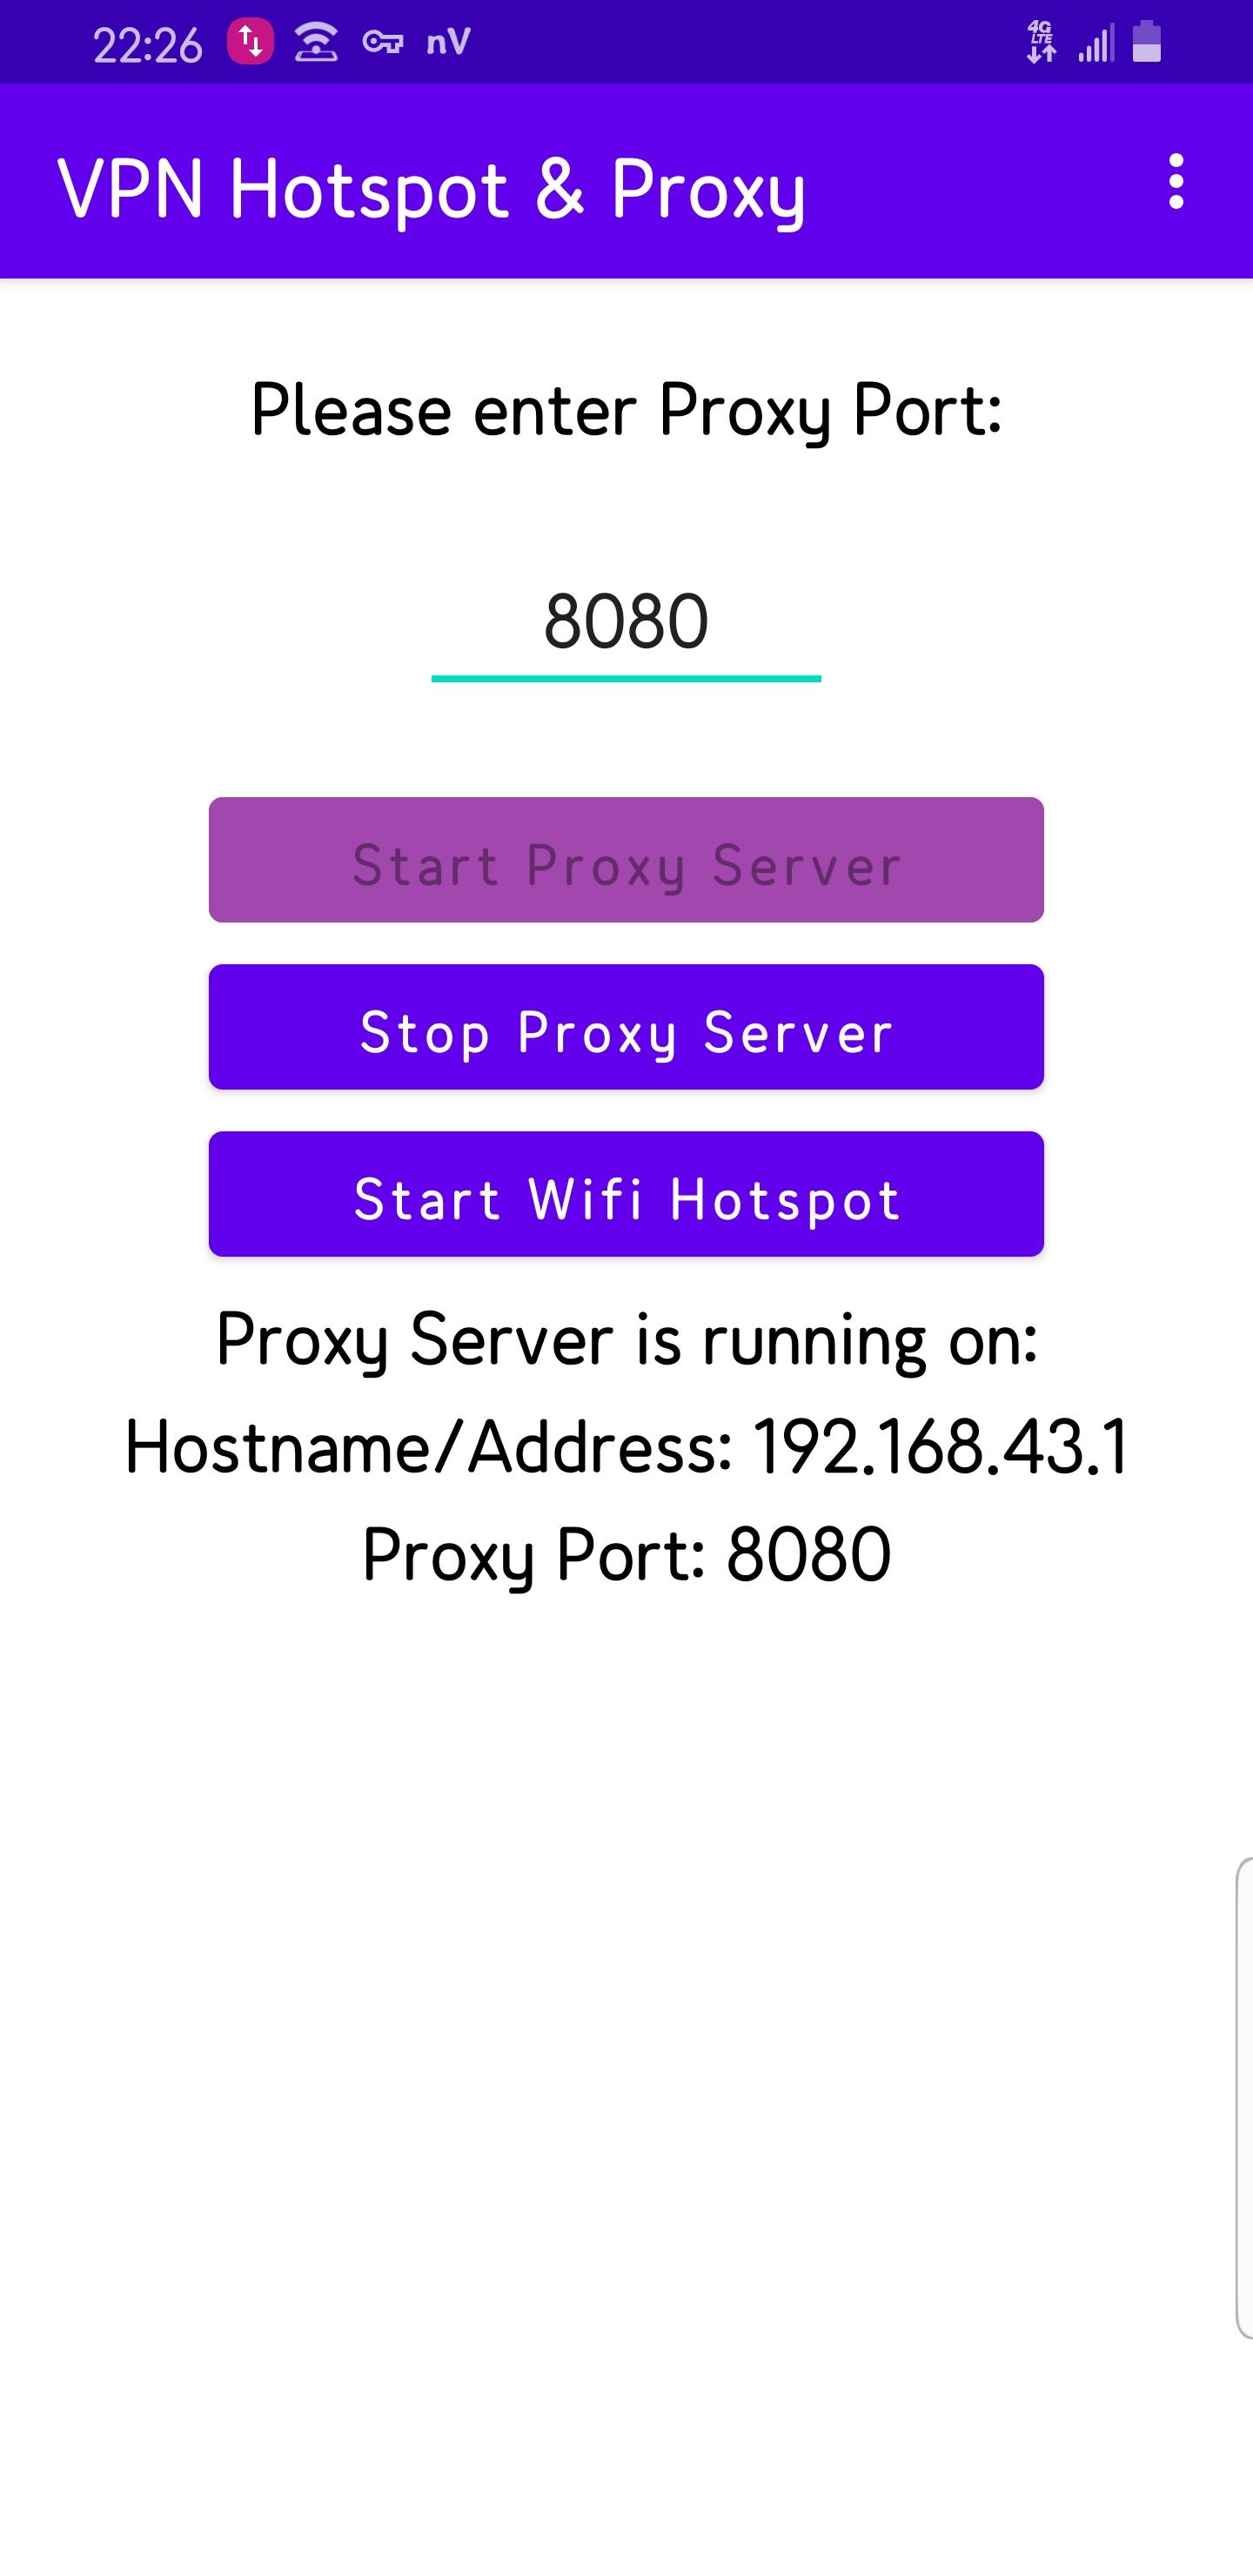 Proxy hotspot